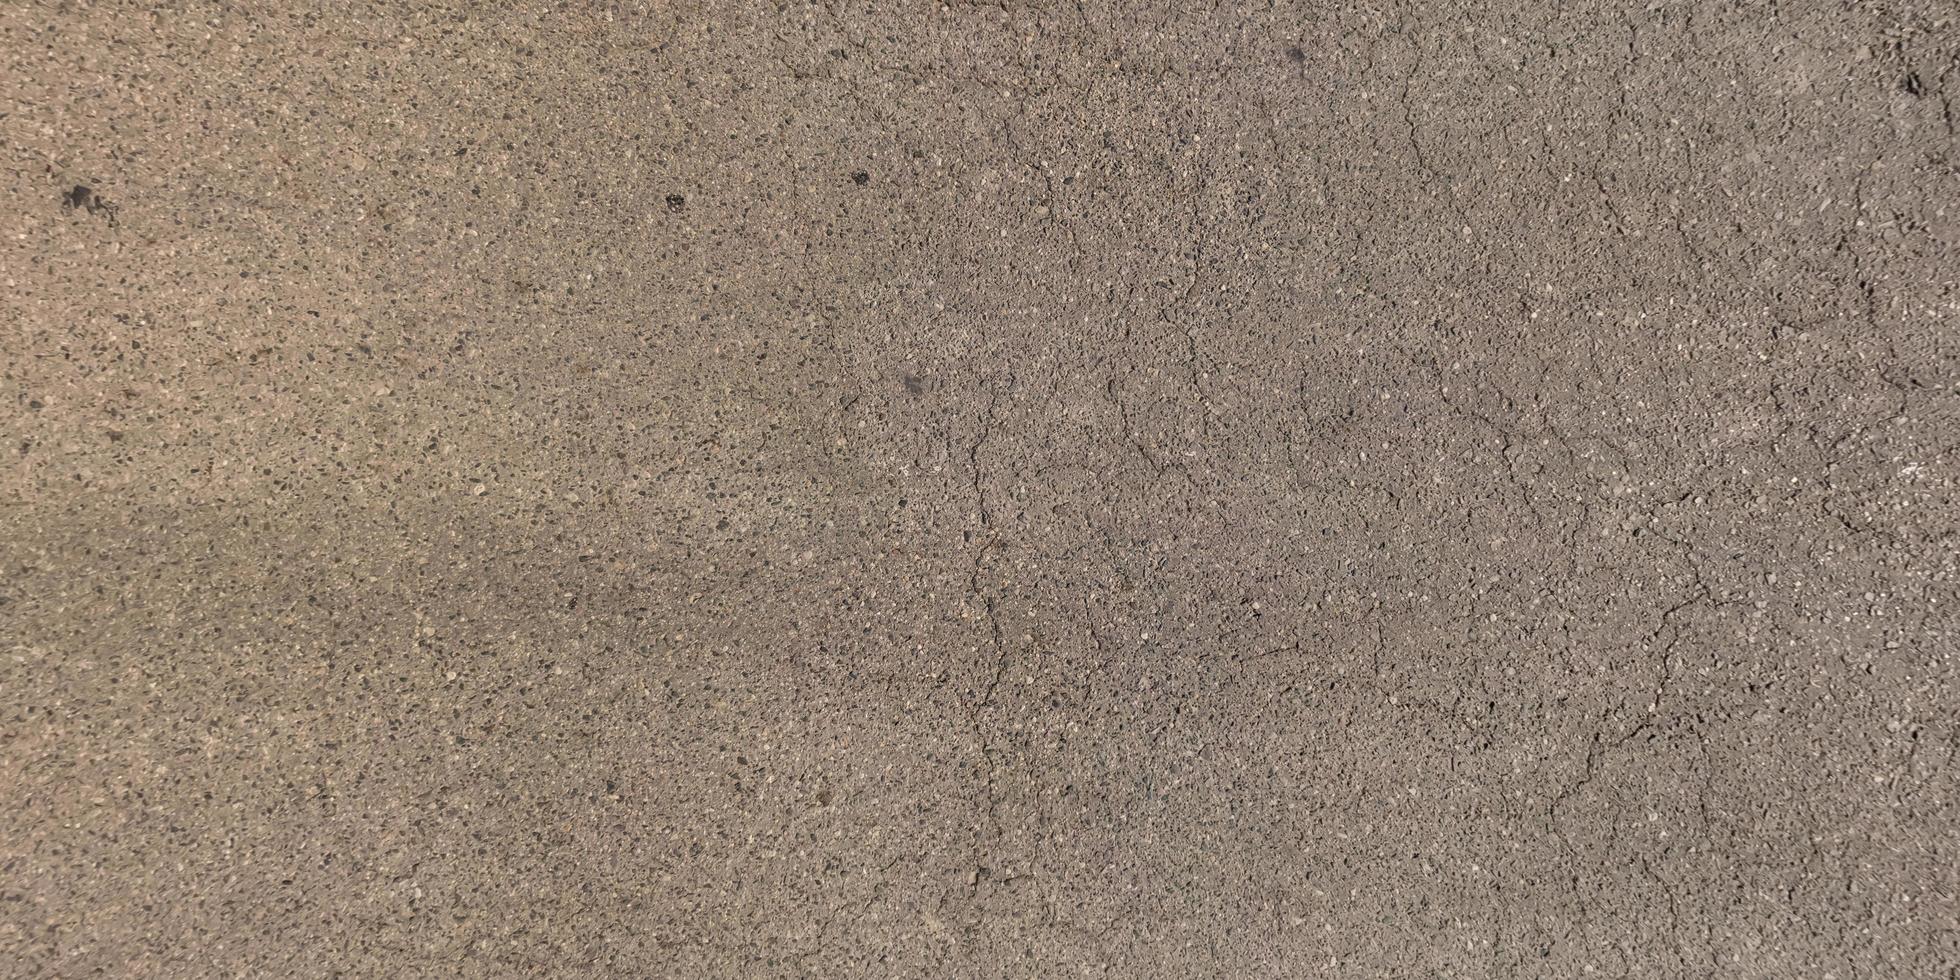 Visualizza a partire dal sopra su superficie di vecchio asfalto strada con crepe foto